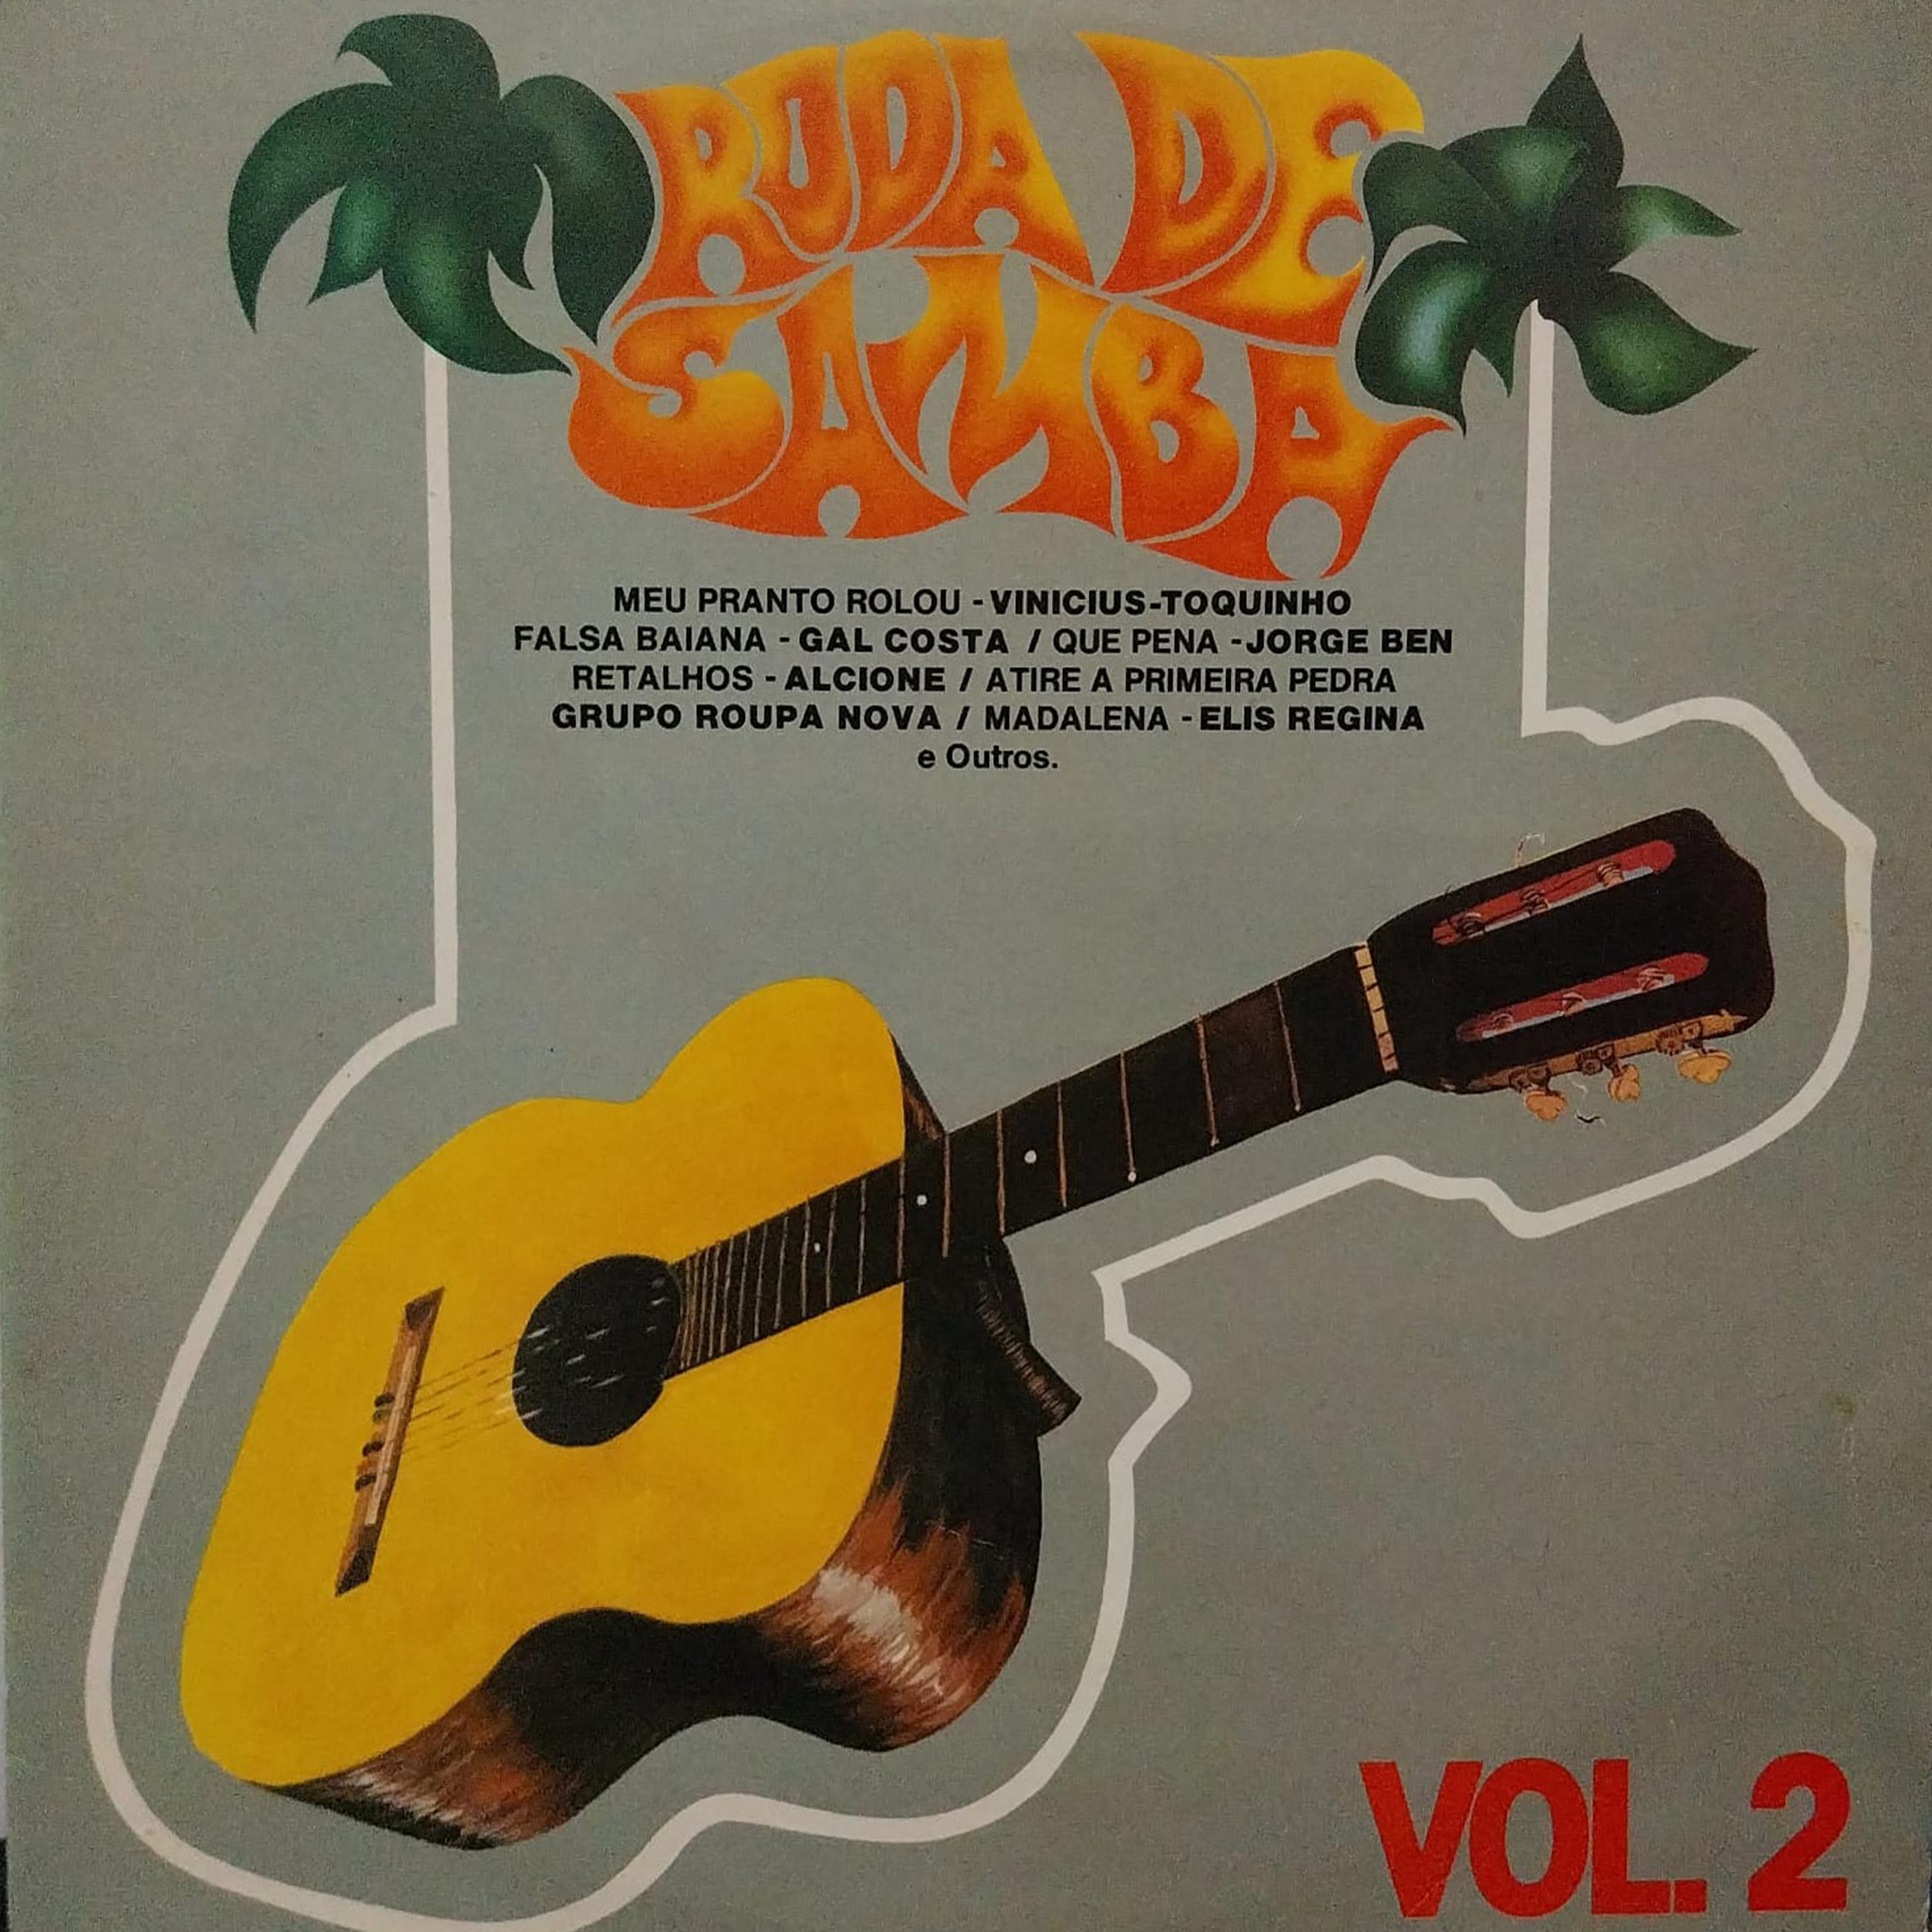 Vinil - Roda De Samba Vol 2